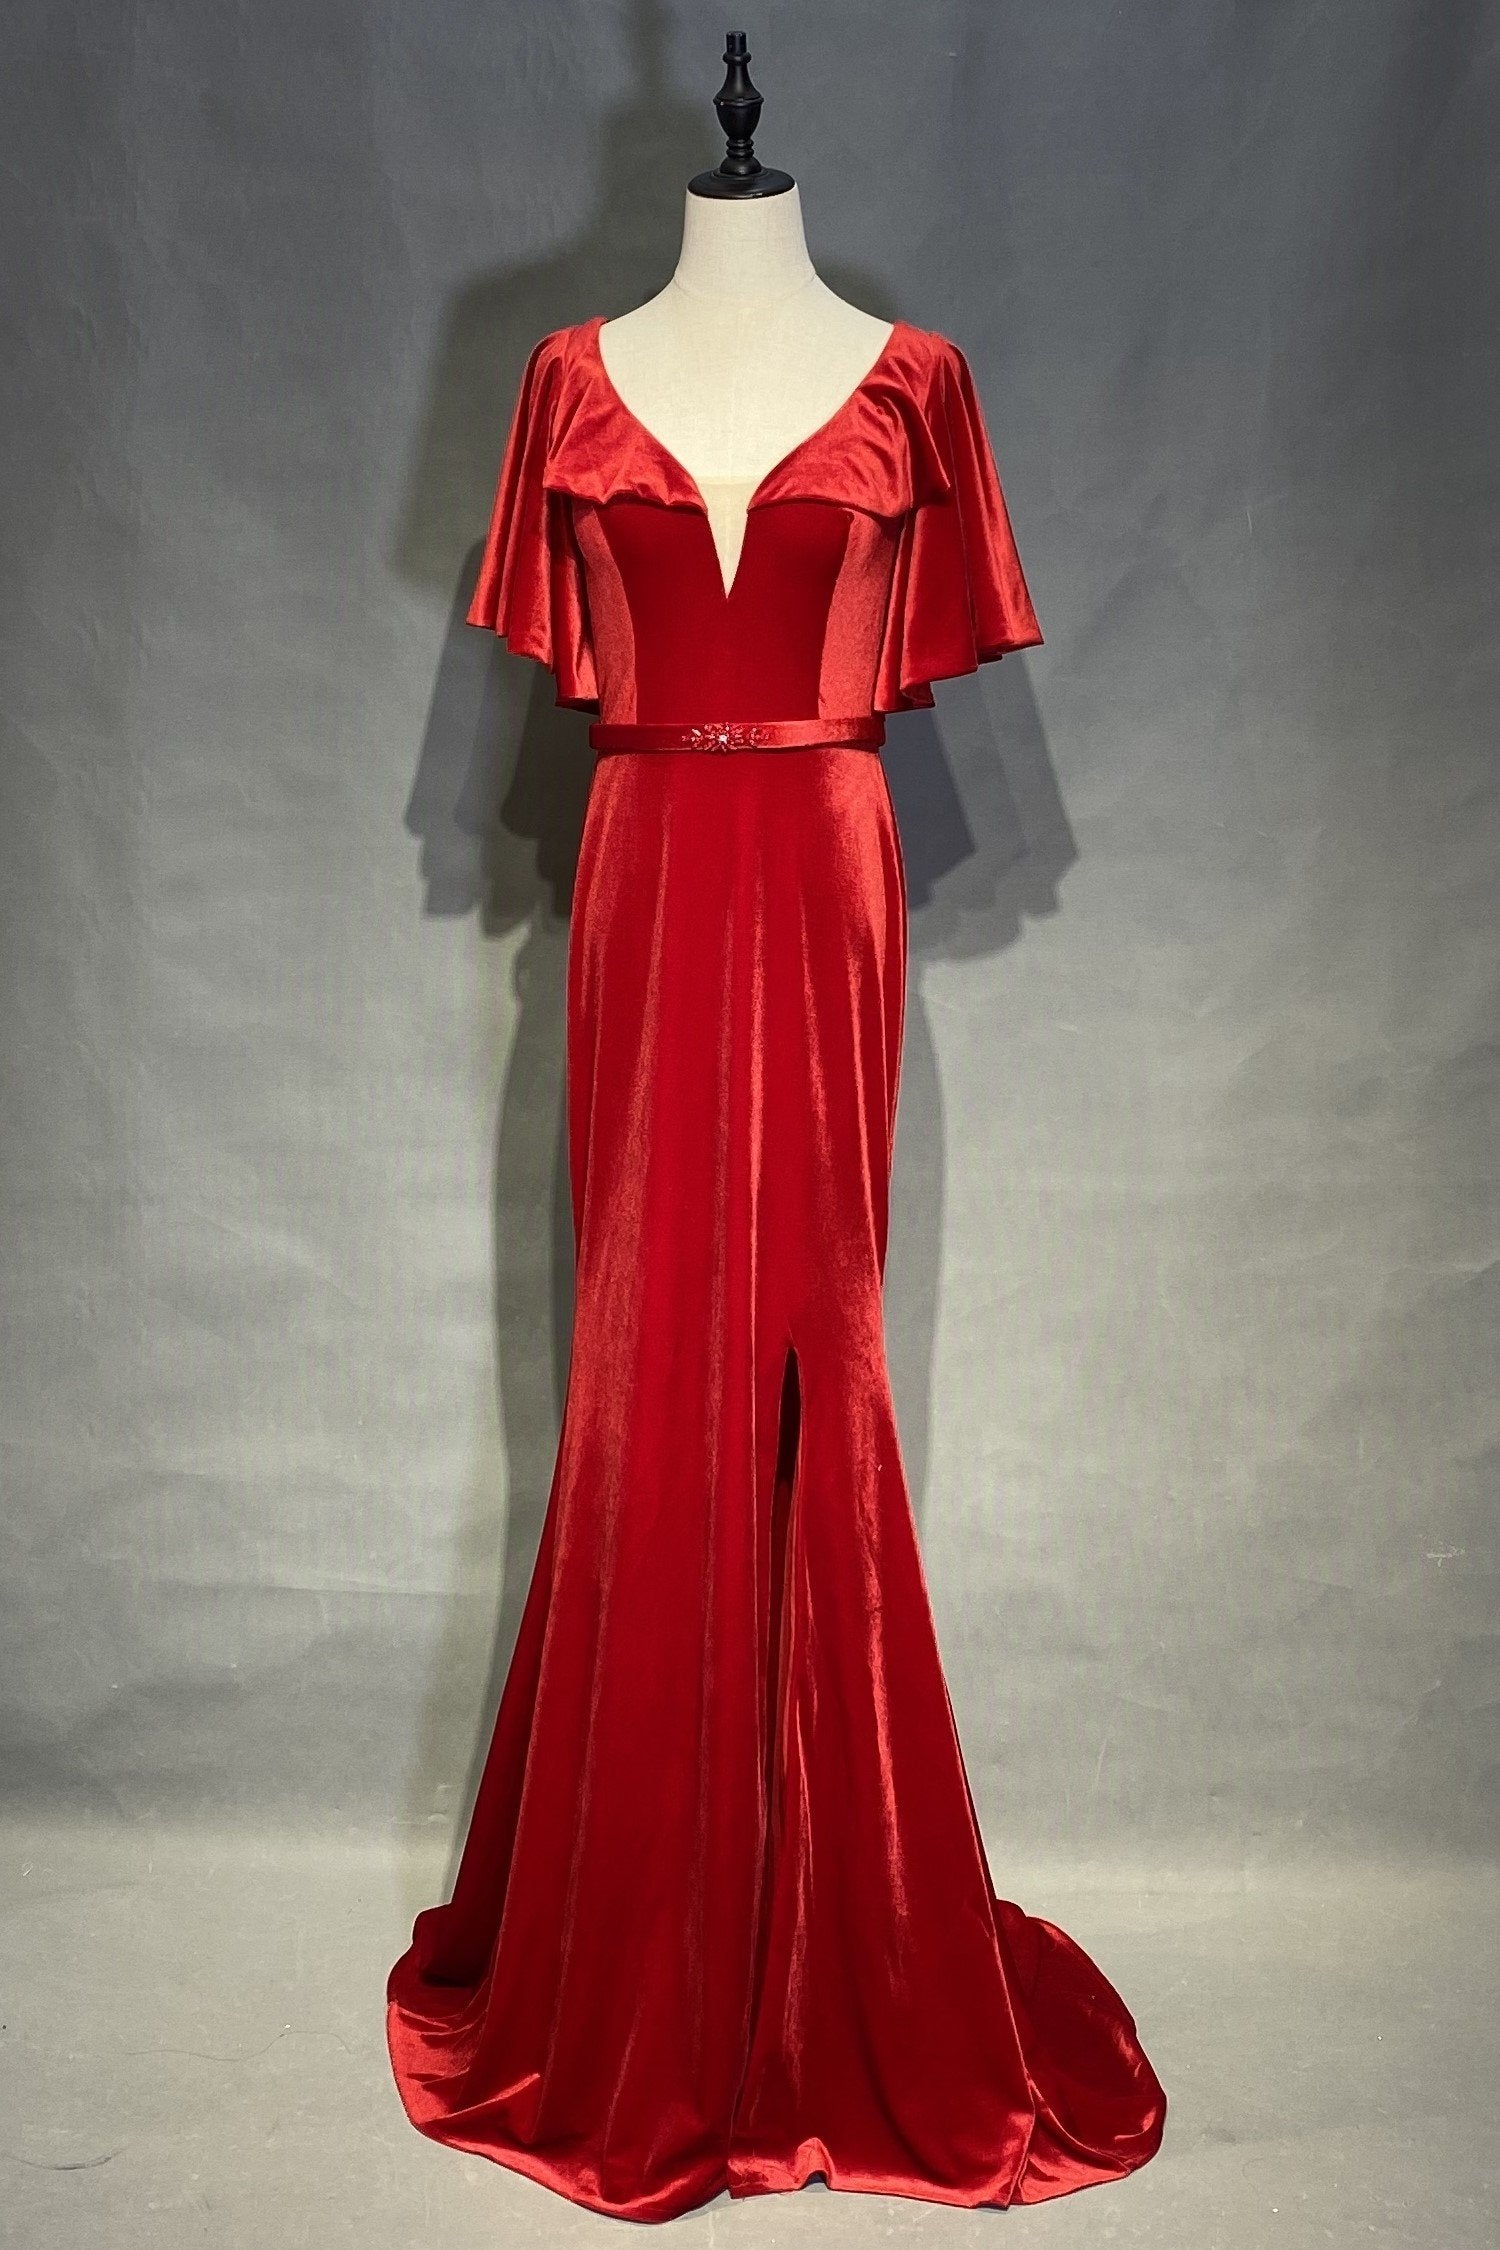 Velvet Red Evening Dresses with Ruffles Sleeves